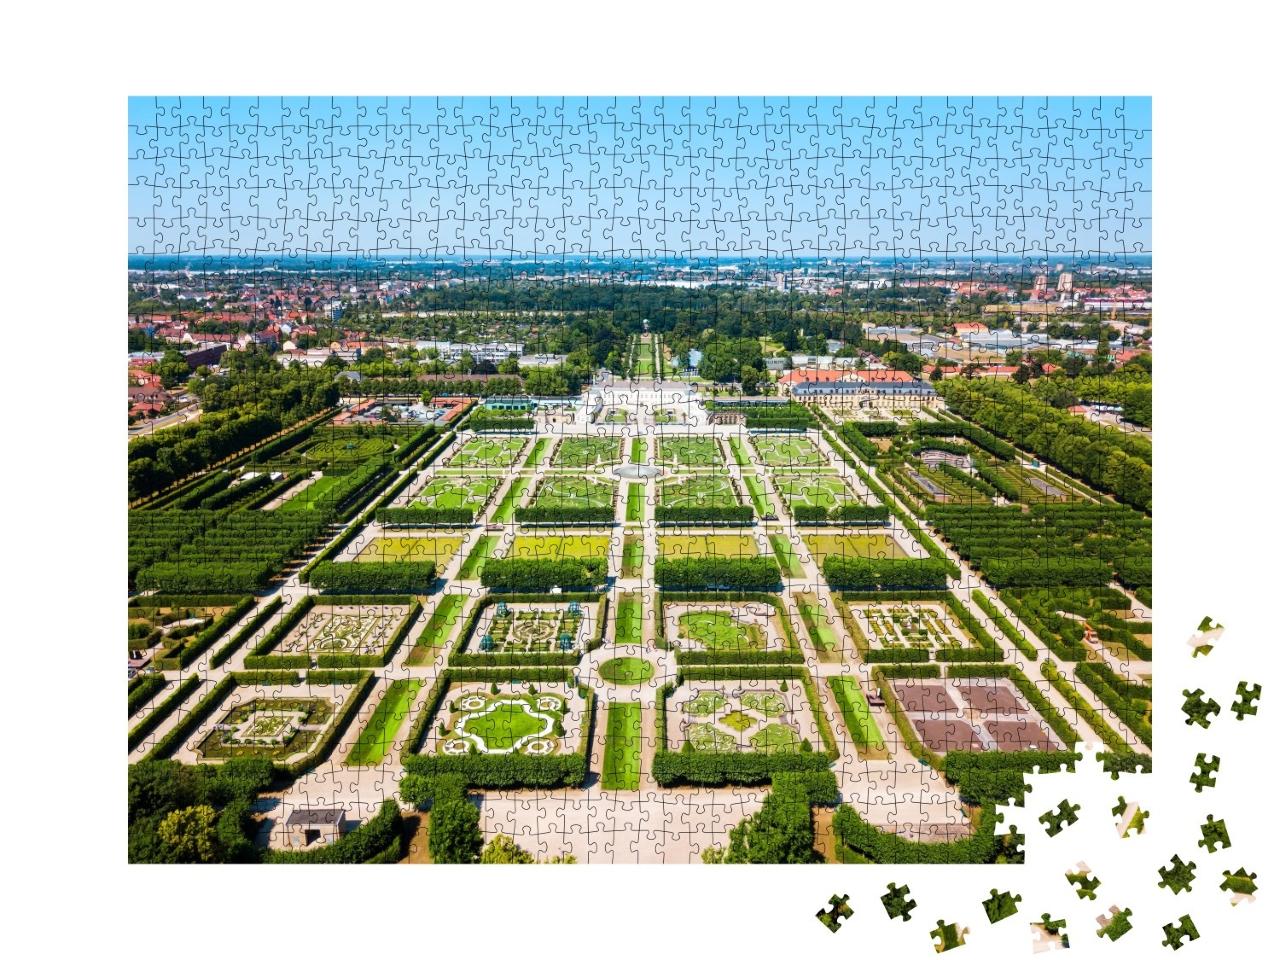 Puzzle de 1000 pièces « Jardins de Herrenhausen du château de Herrenhausen à Hanovre, Allemagne »